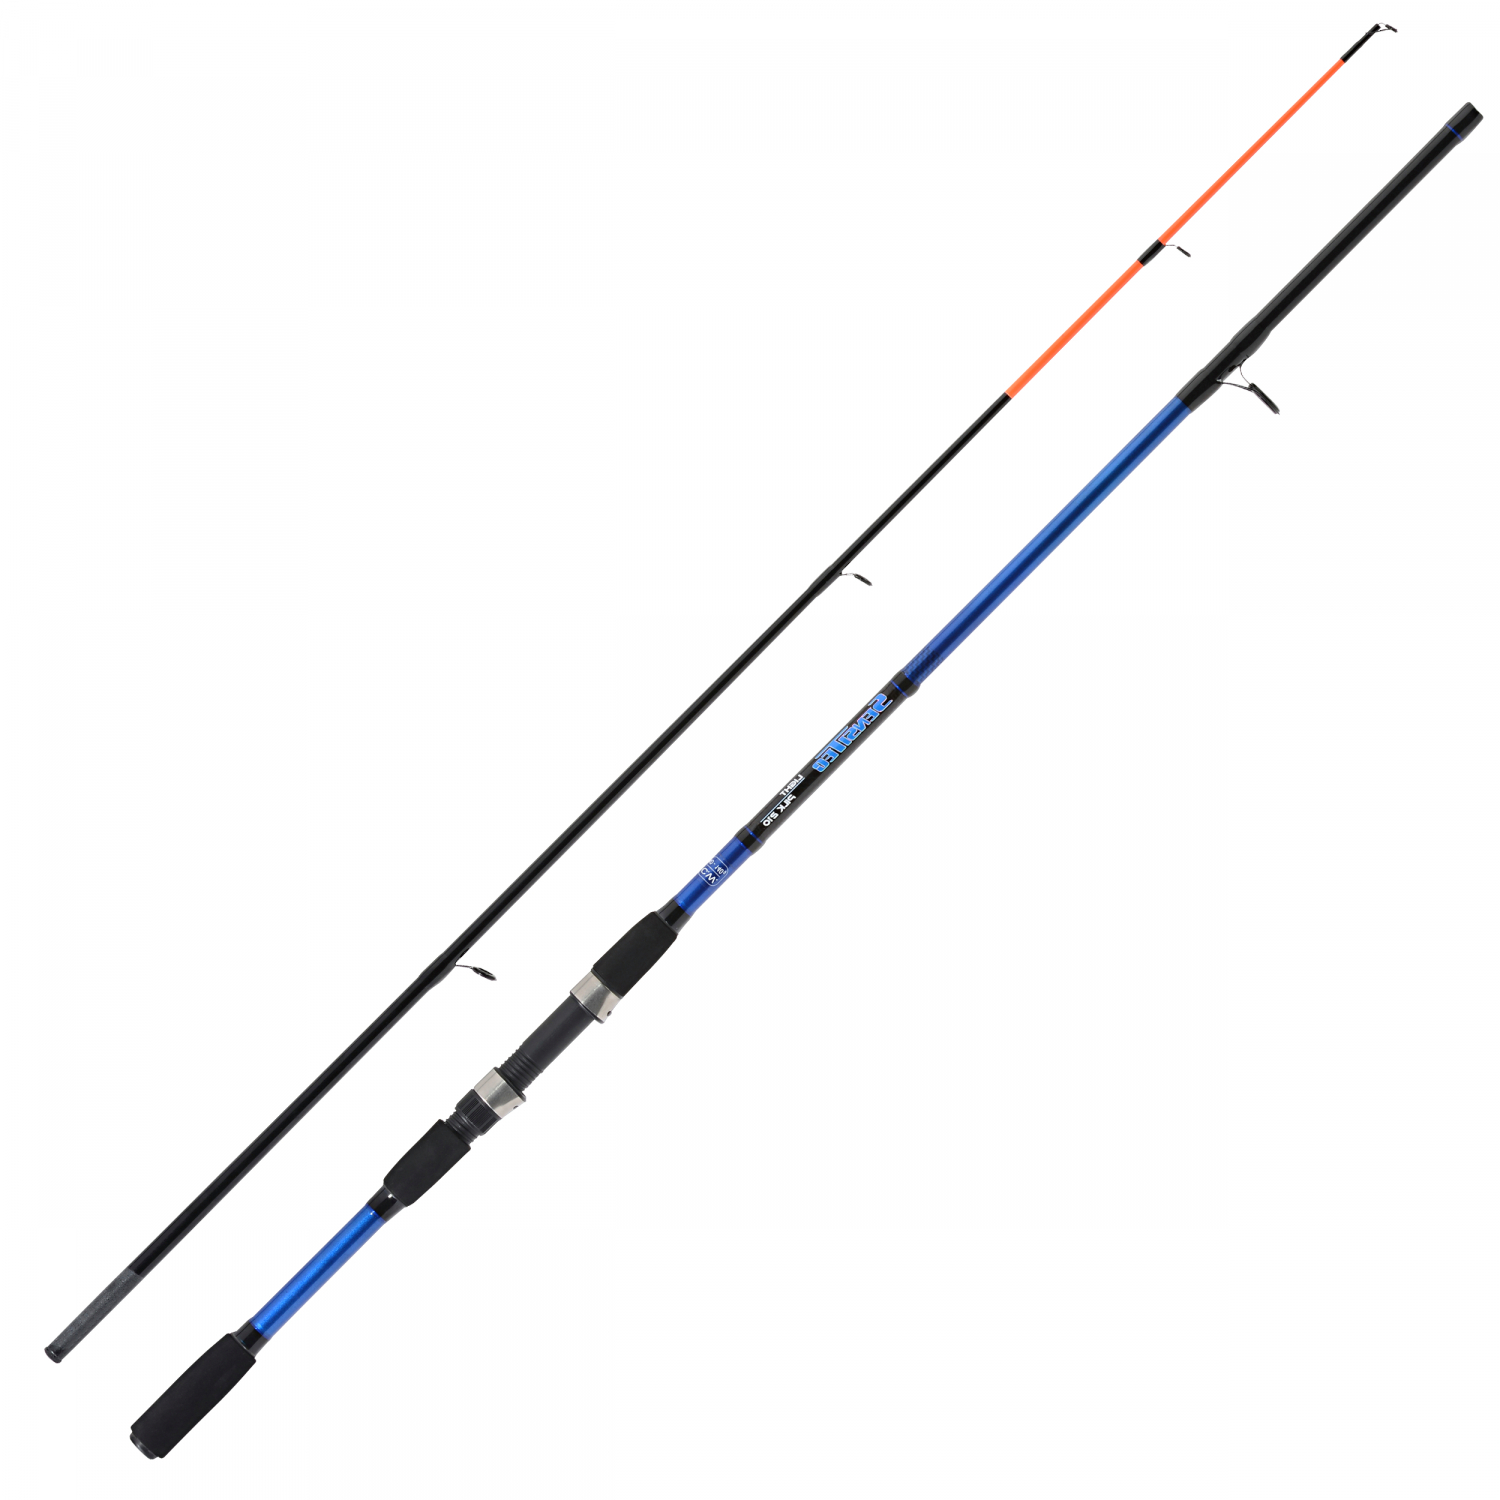 Sänger Sänger Sensitec Sea Rod Series Light Pilk Fishing Rods 